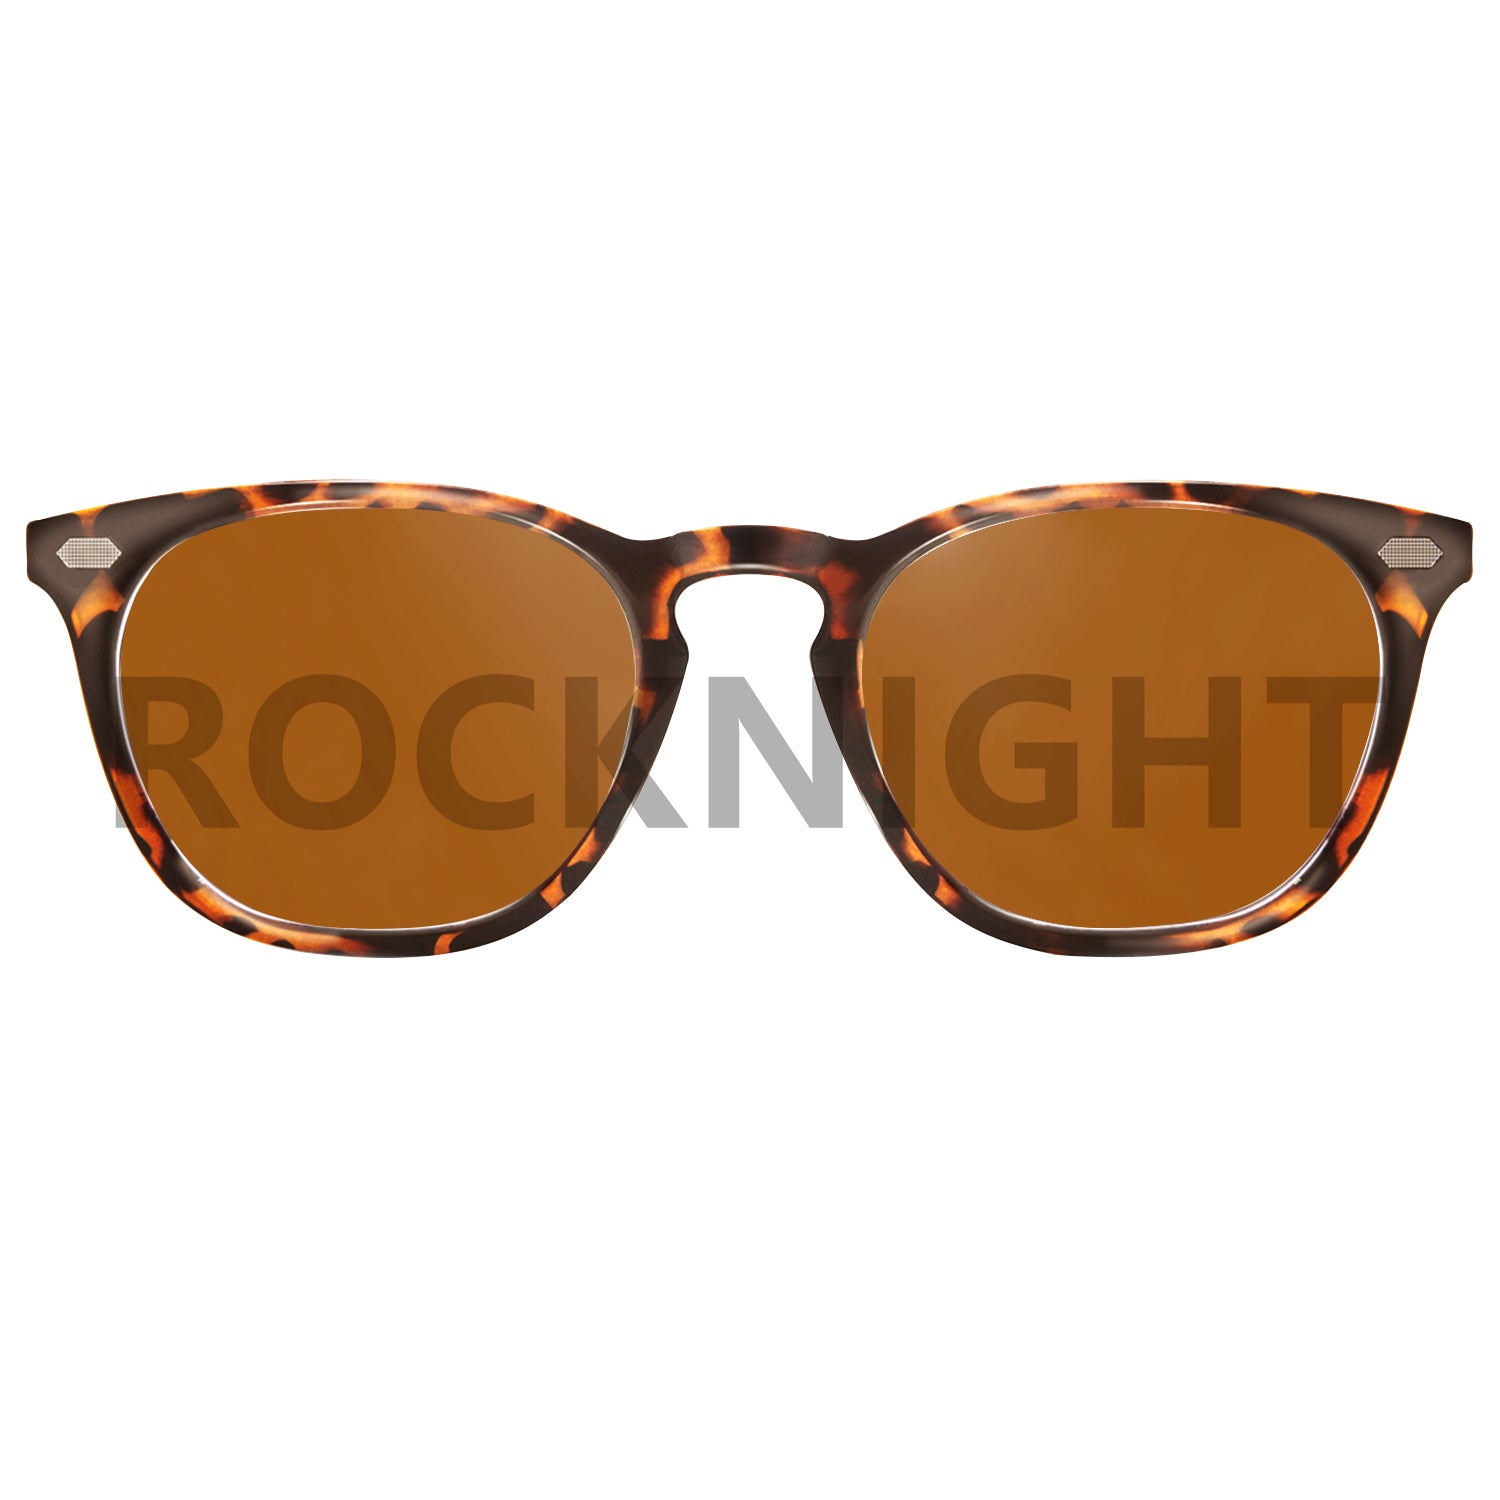 Polarized Sunglasses A581